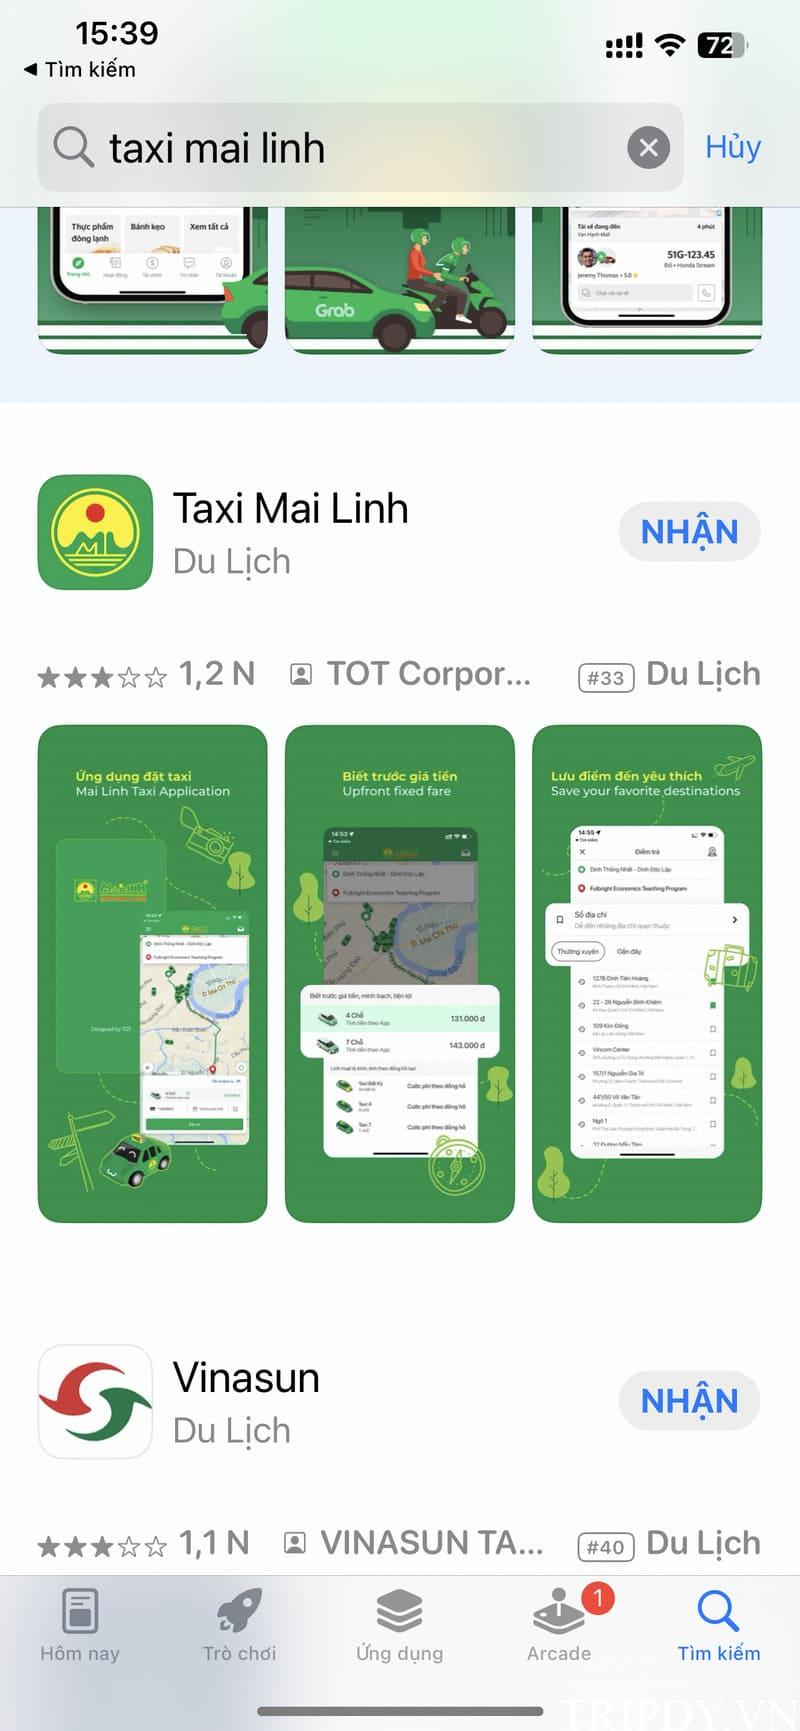 Taxi Mai Linh Đồng Tháp: Số điện thoại tổng đài, giá cước km